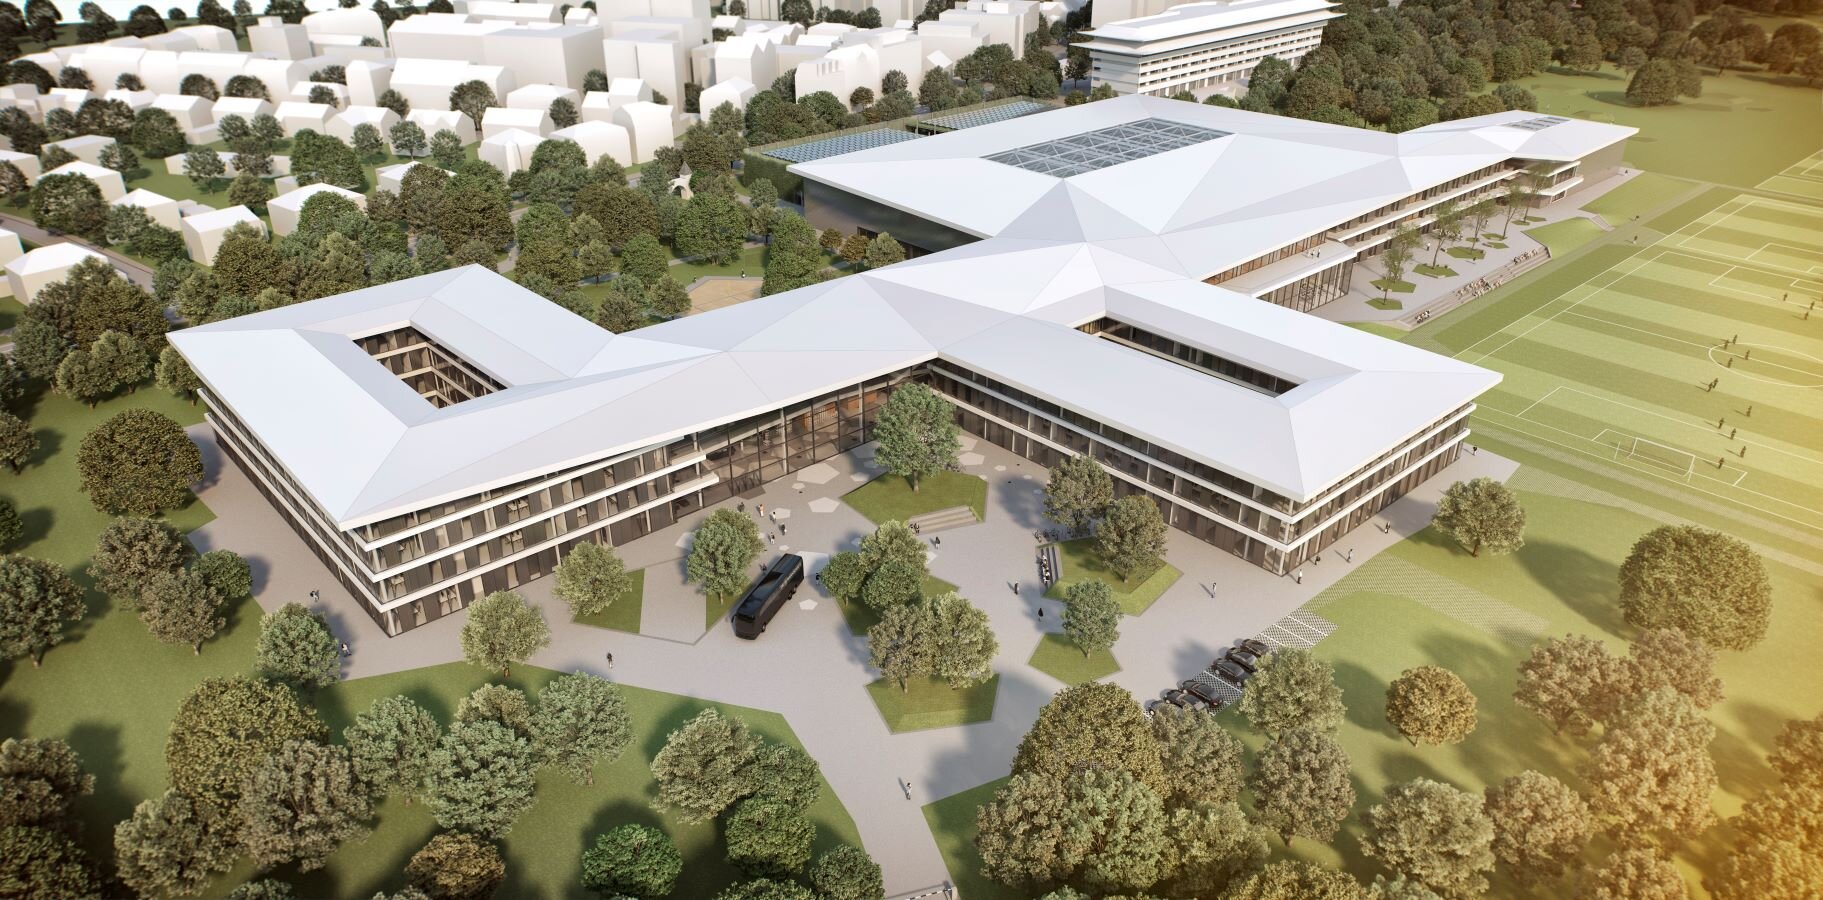 © Dussmann Service hat Anfang März die kulinarische Betreuung des neuen 15 Hektar großen DFB-Campus übernommen (Visualisierung: kadawittfeldarchitektur)